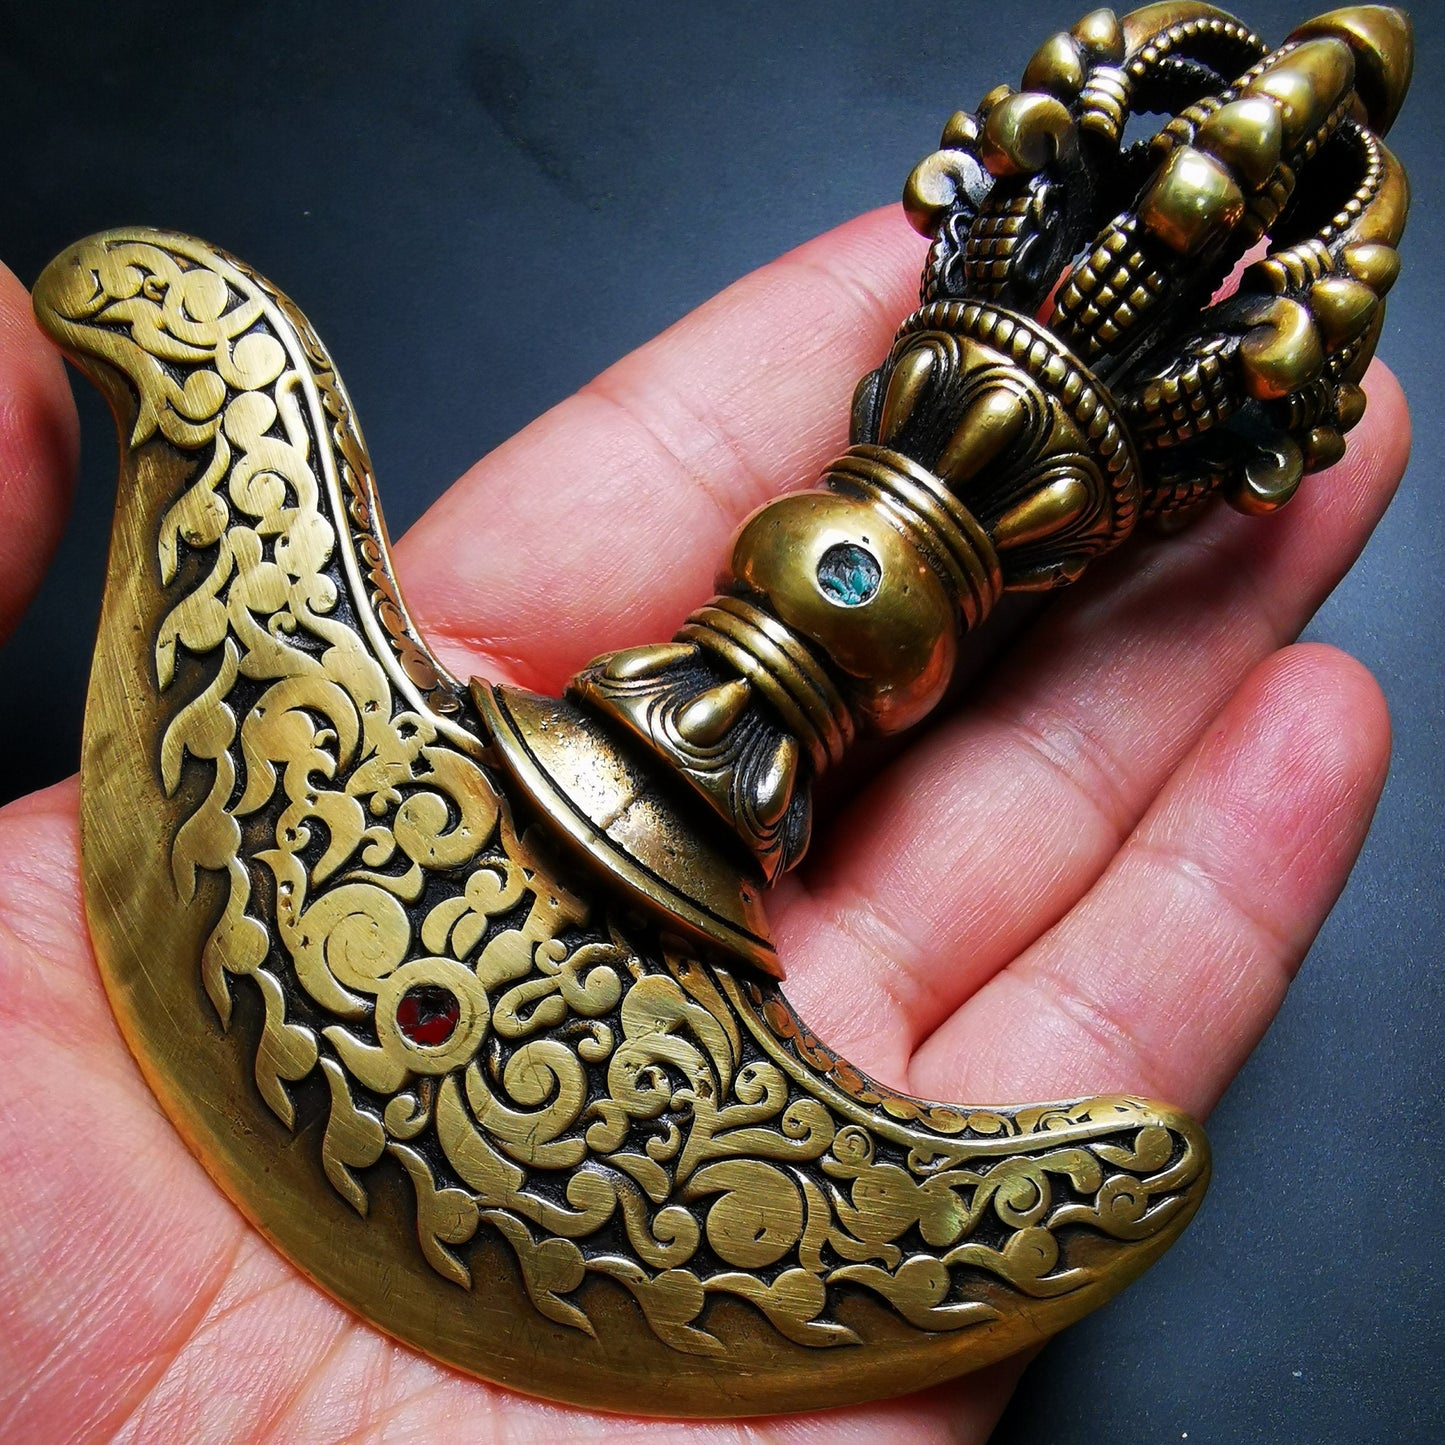 Gandhanra Antique Tibetan Amulet Ritual,Kartika(knife of the dakinis), Trantic Buddhism Dharma, Made of Brass,Agate